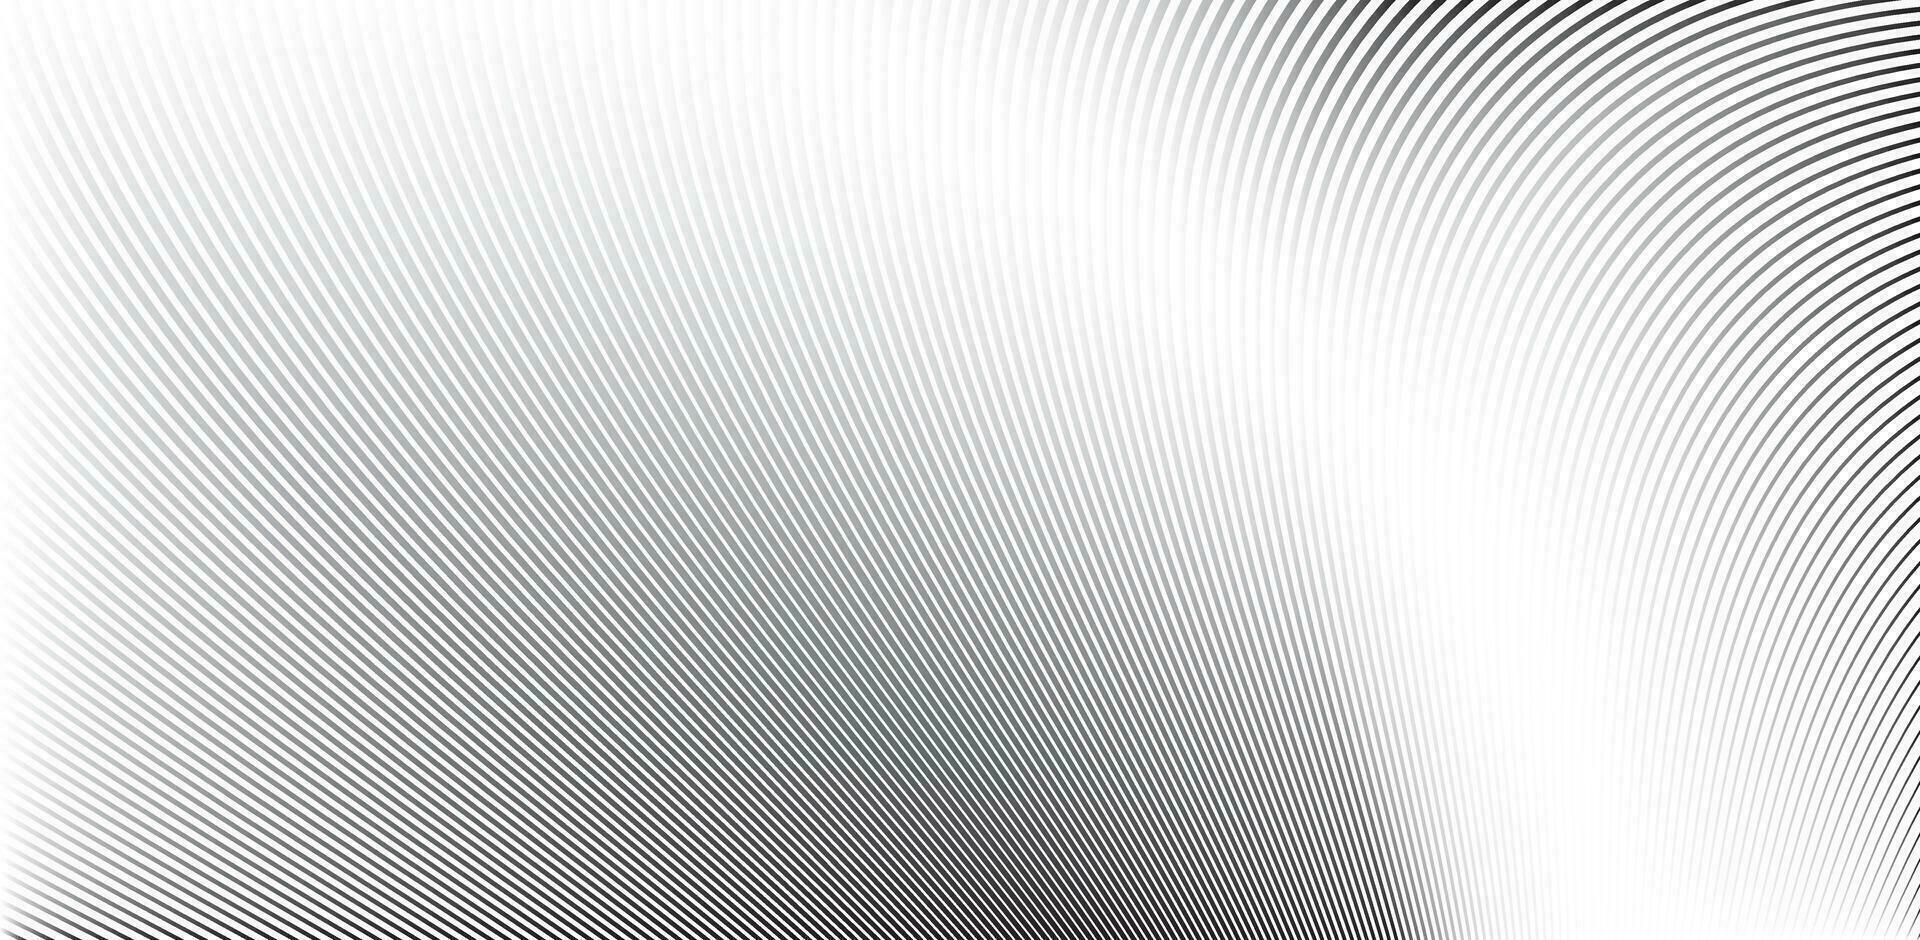 Fondo abstracto de patrón de líneas de onda - textura simple para su diseño. fondo de línea abstracta, vector eps10